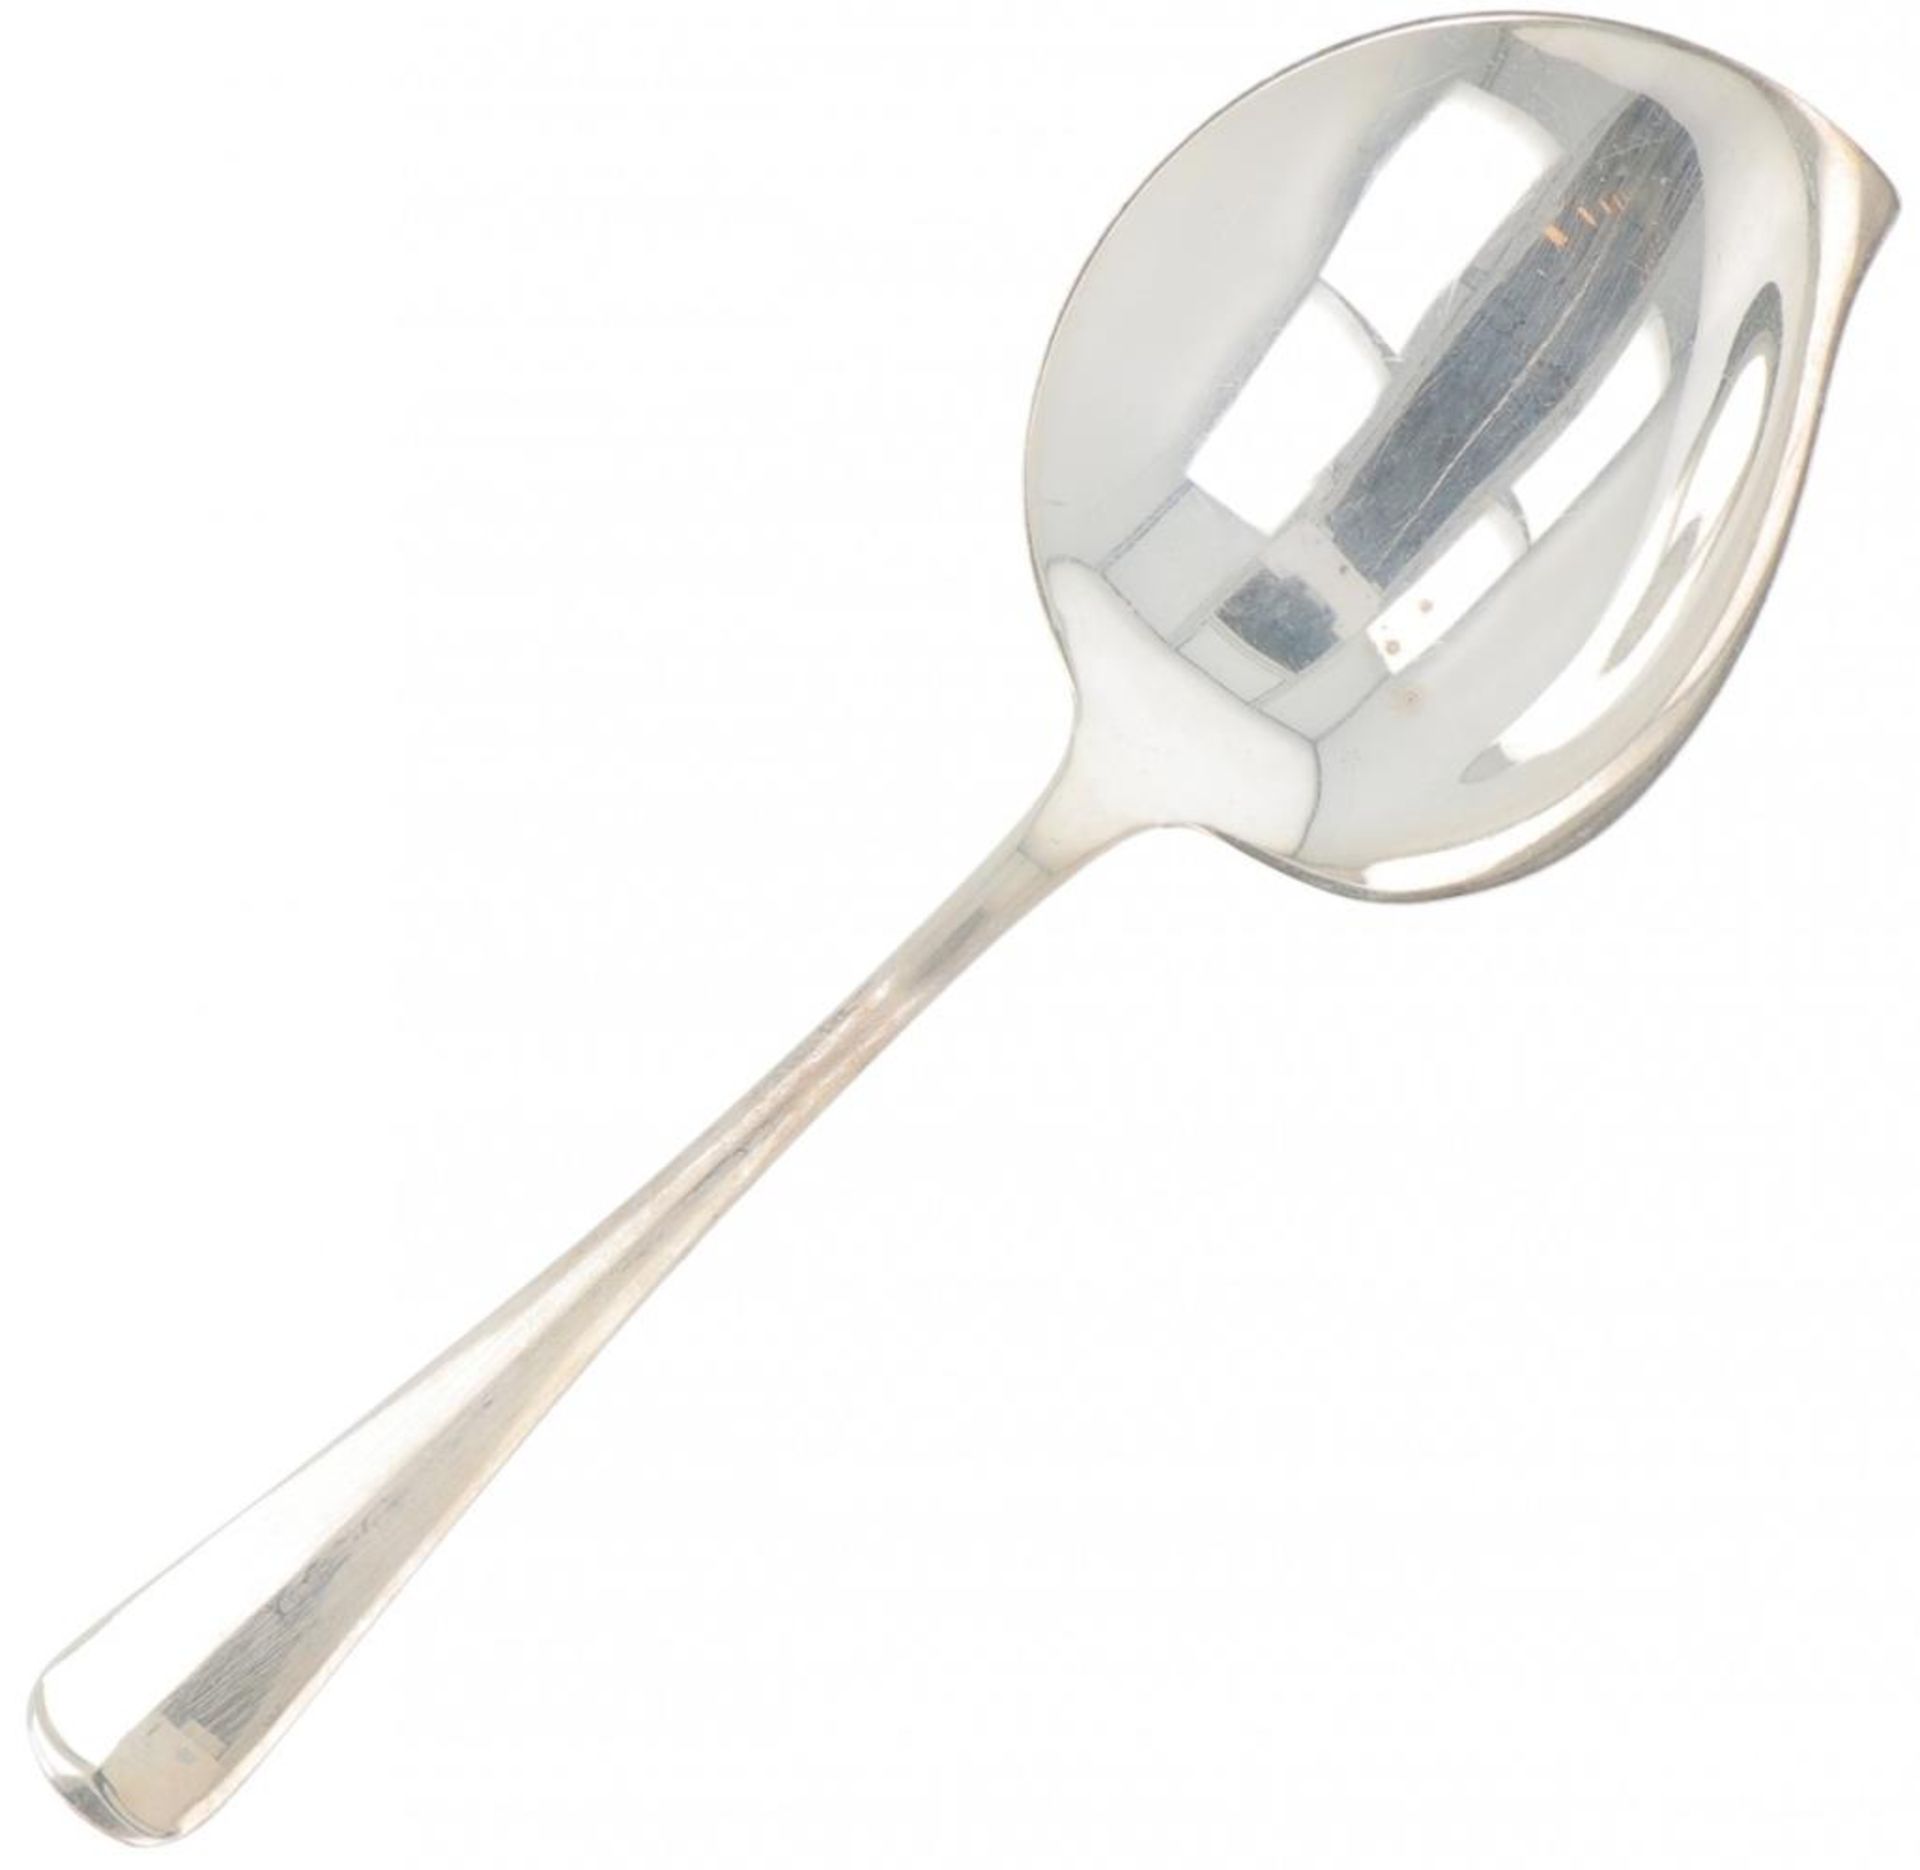 Custard spoon "Haags Lofje" silver.